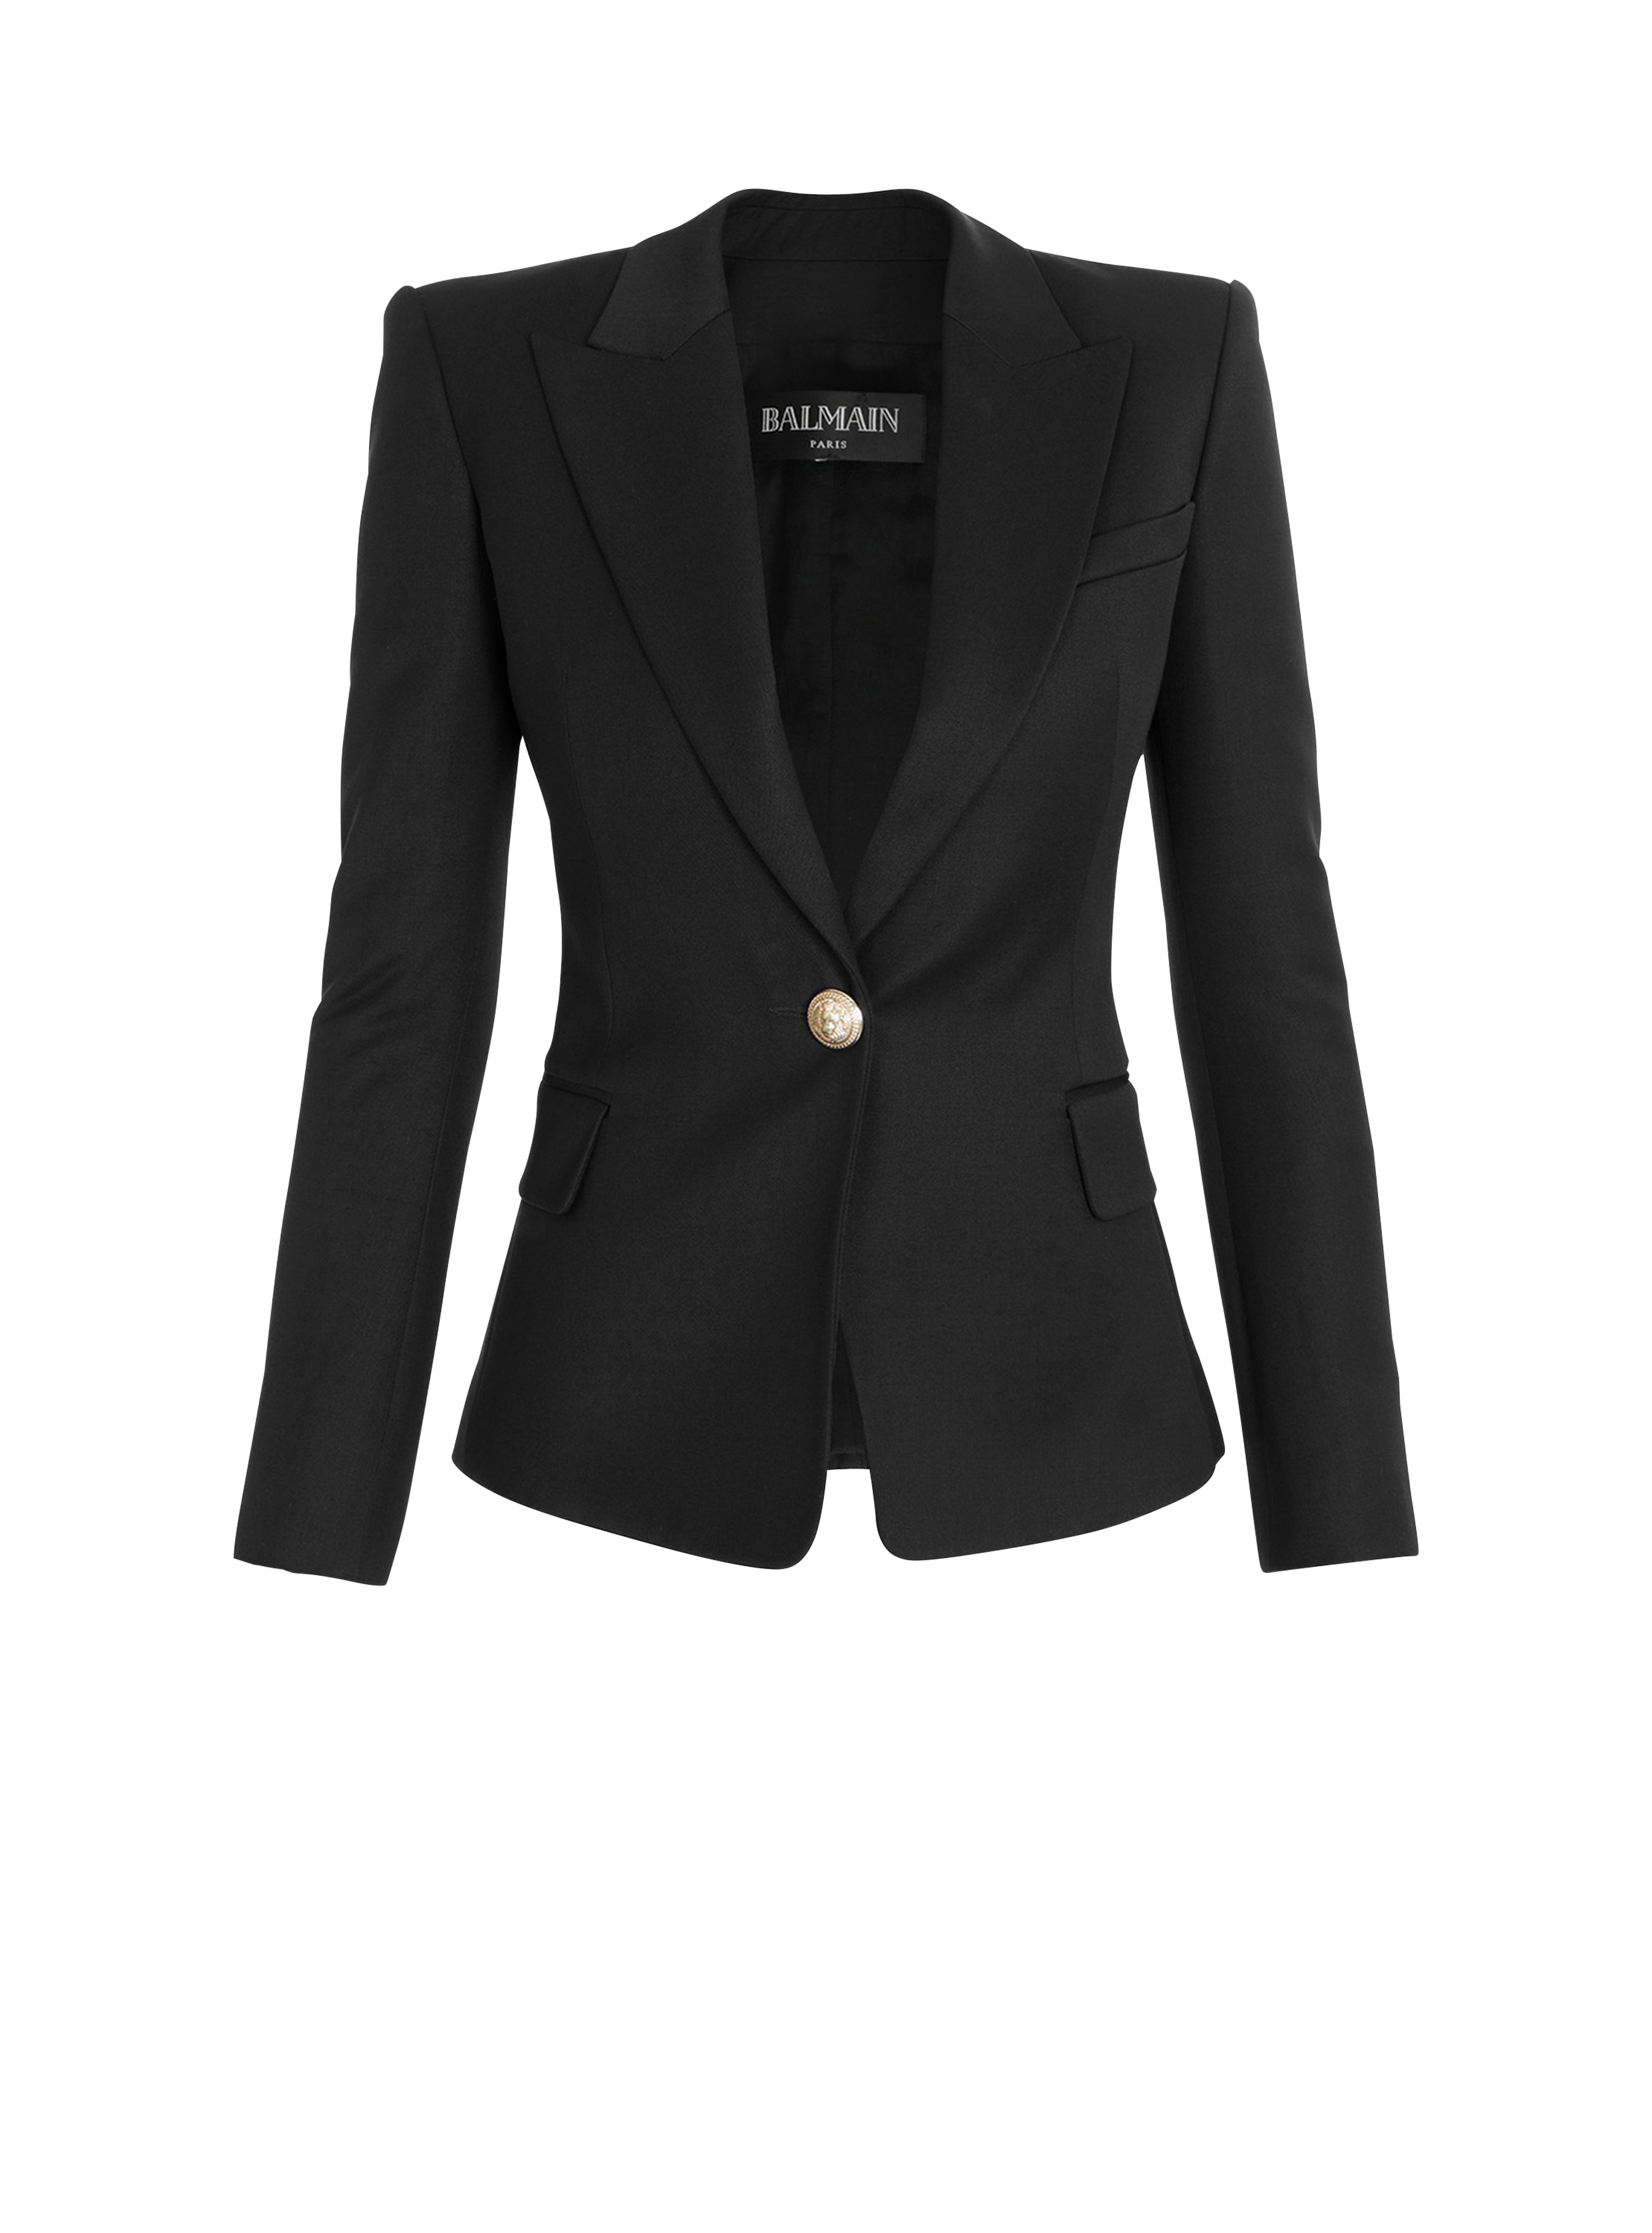 One-button wool blazer, black